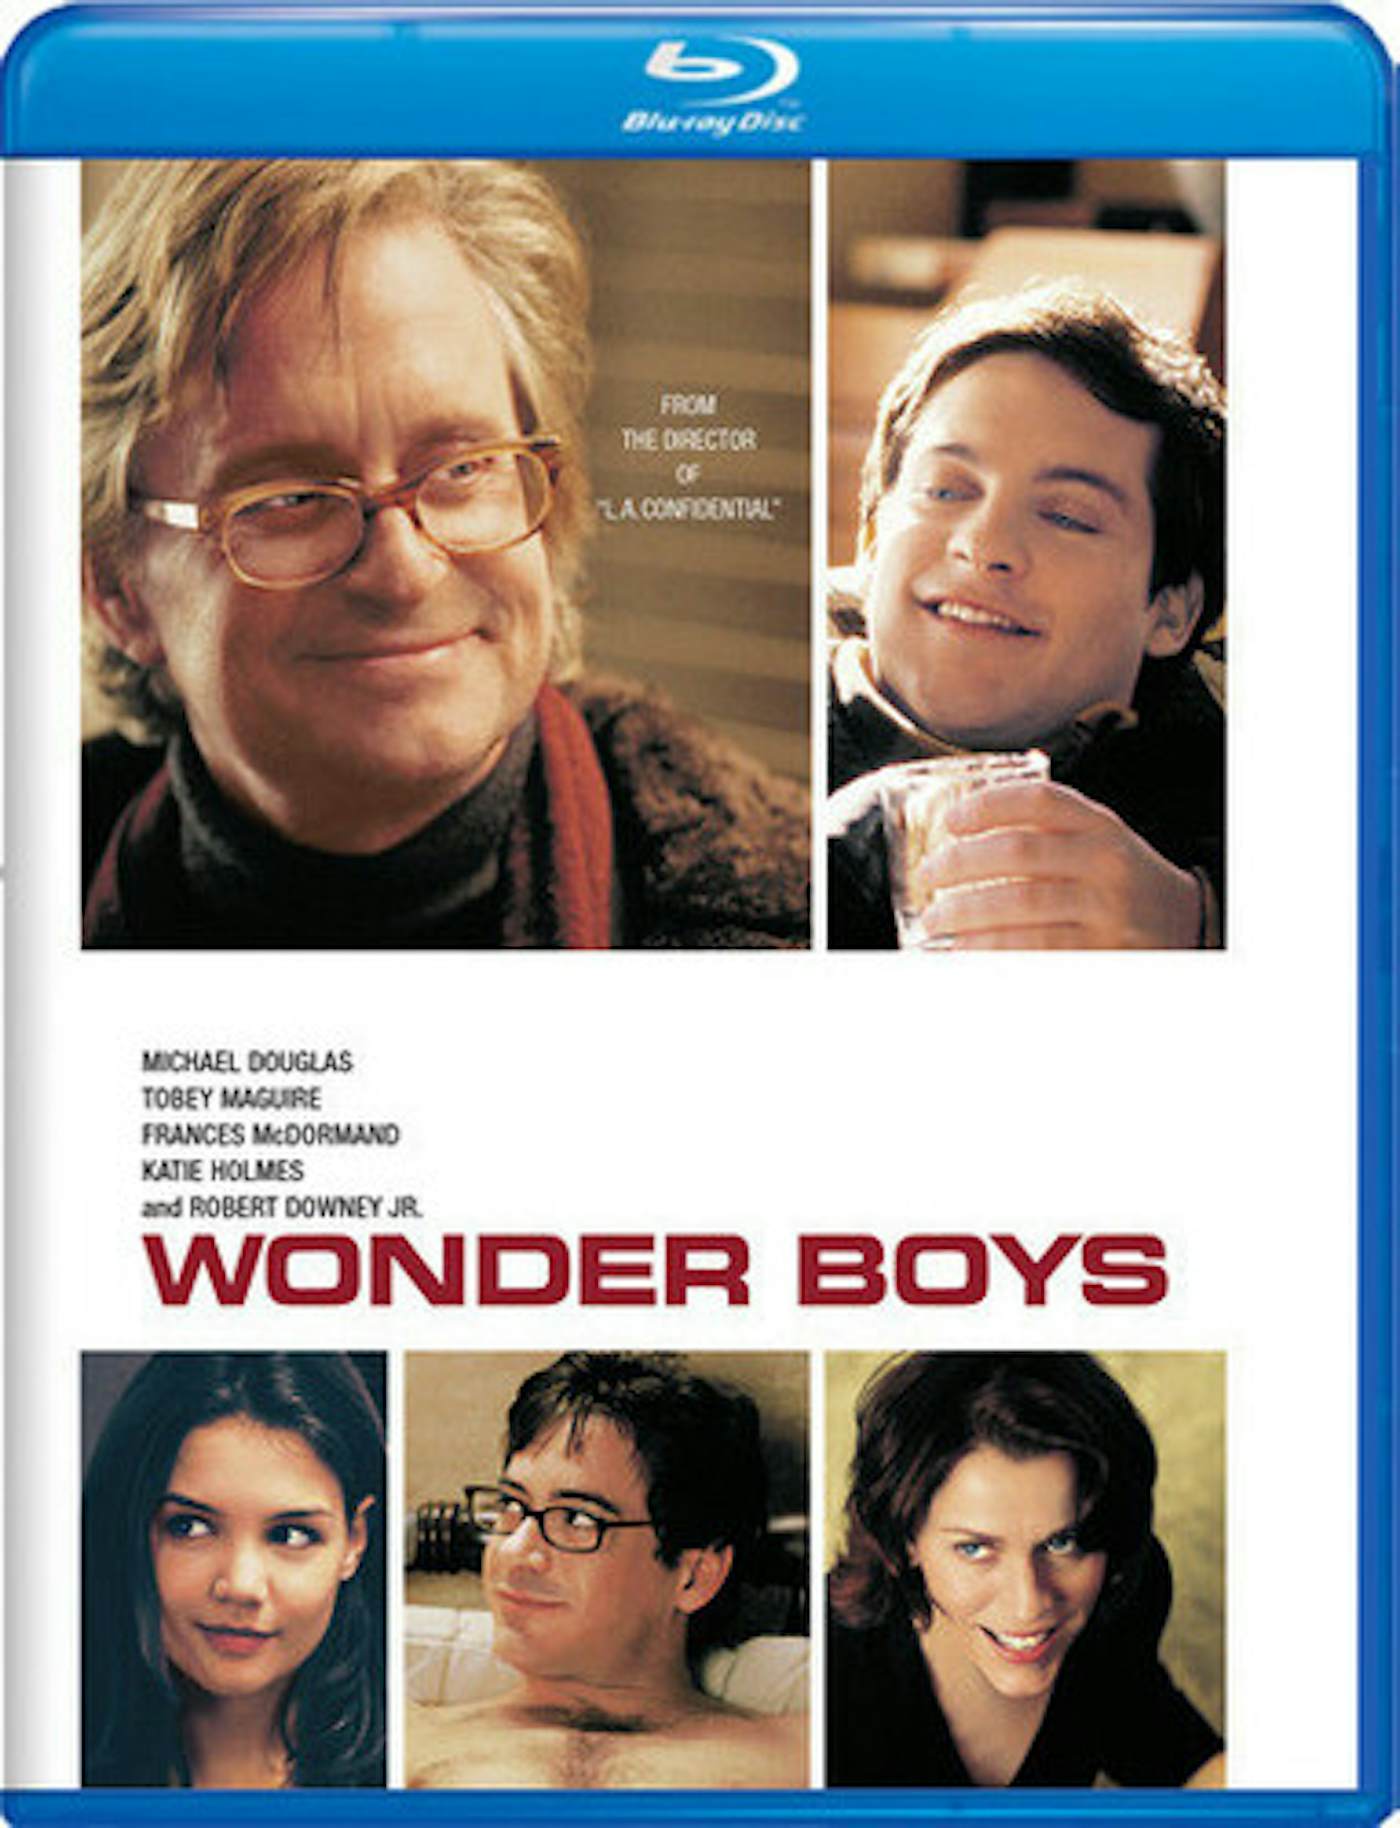 The Wonder Boys